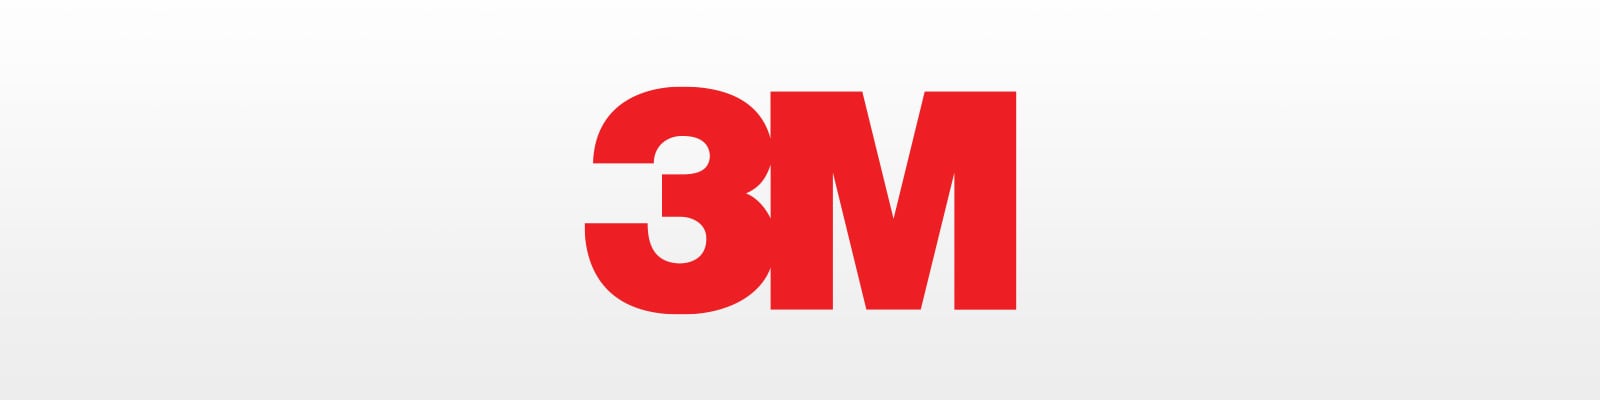 3M - Henry Schein Medical